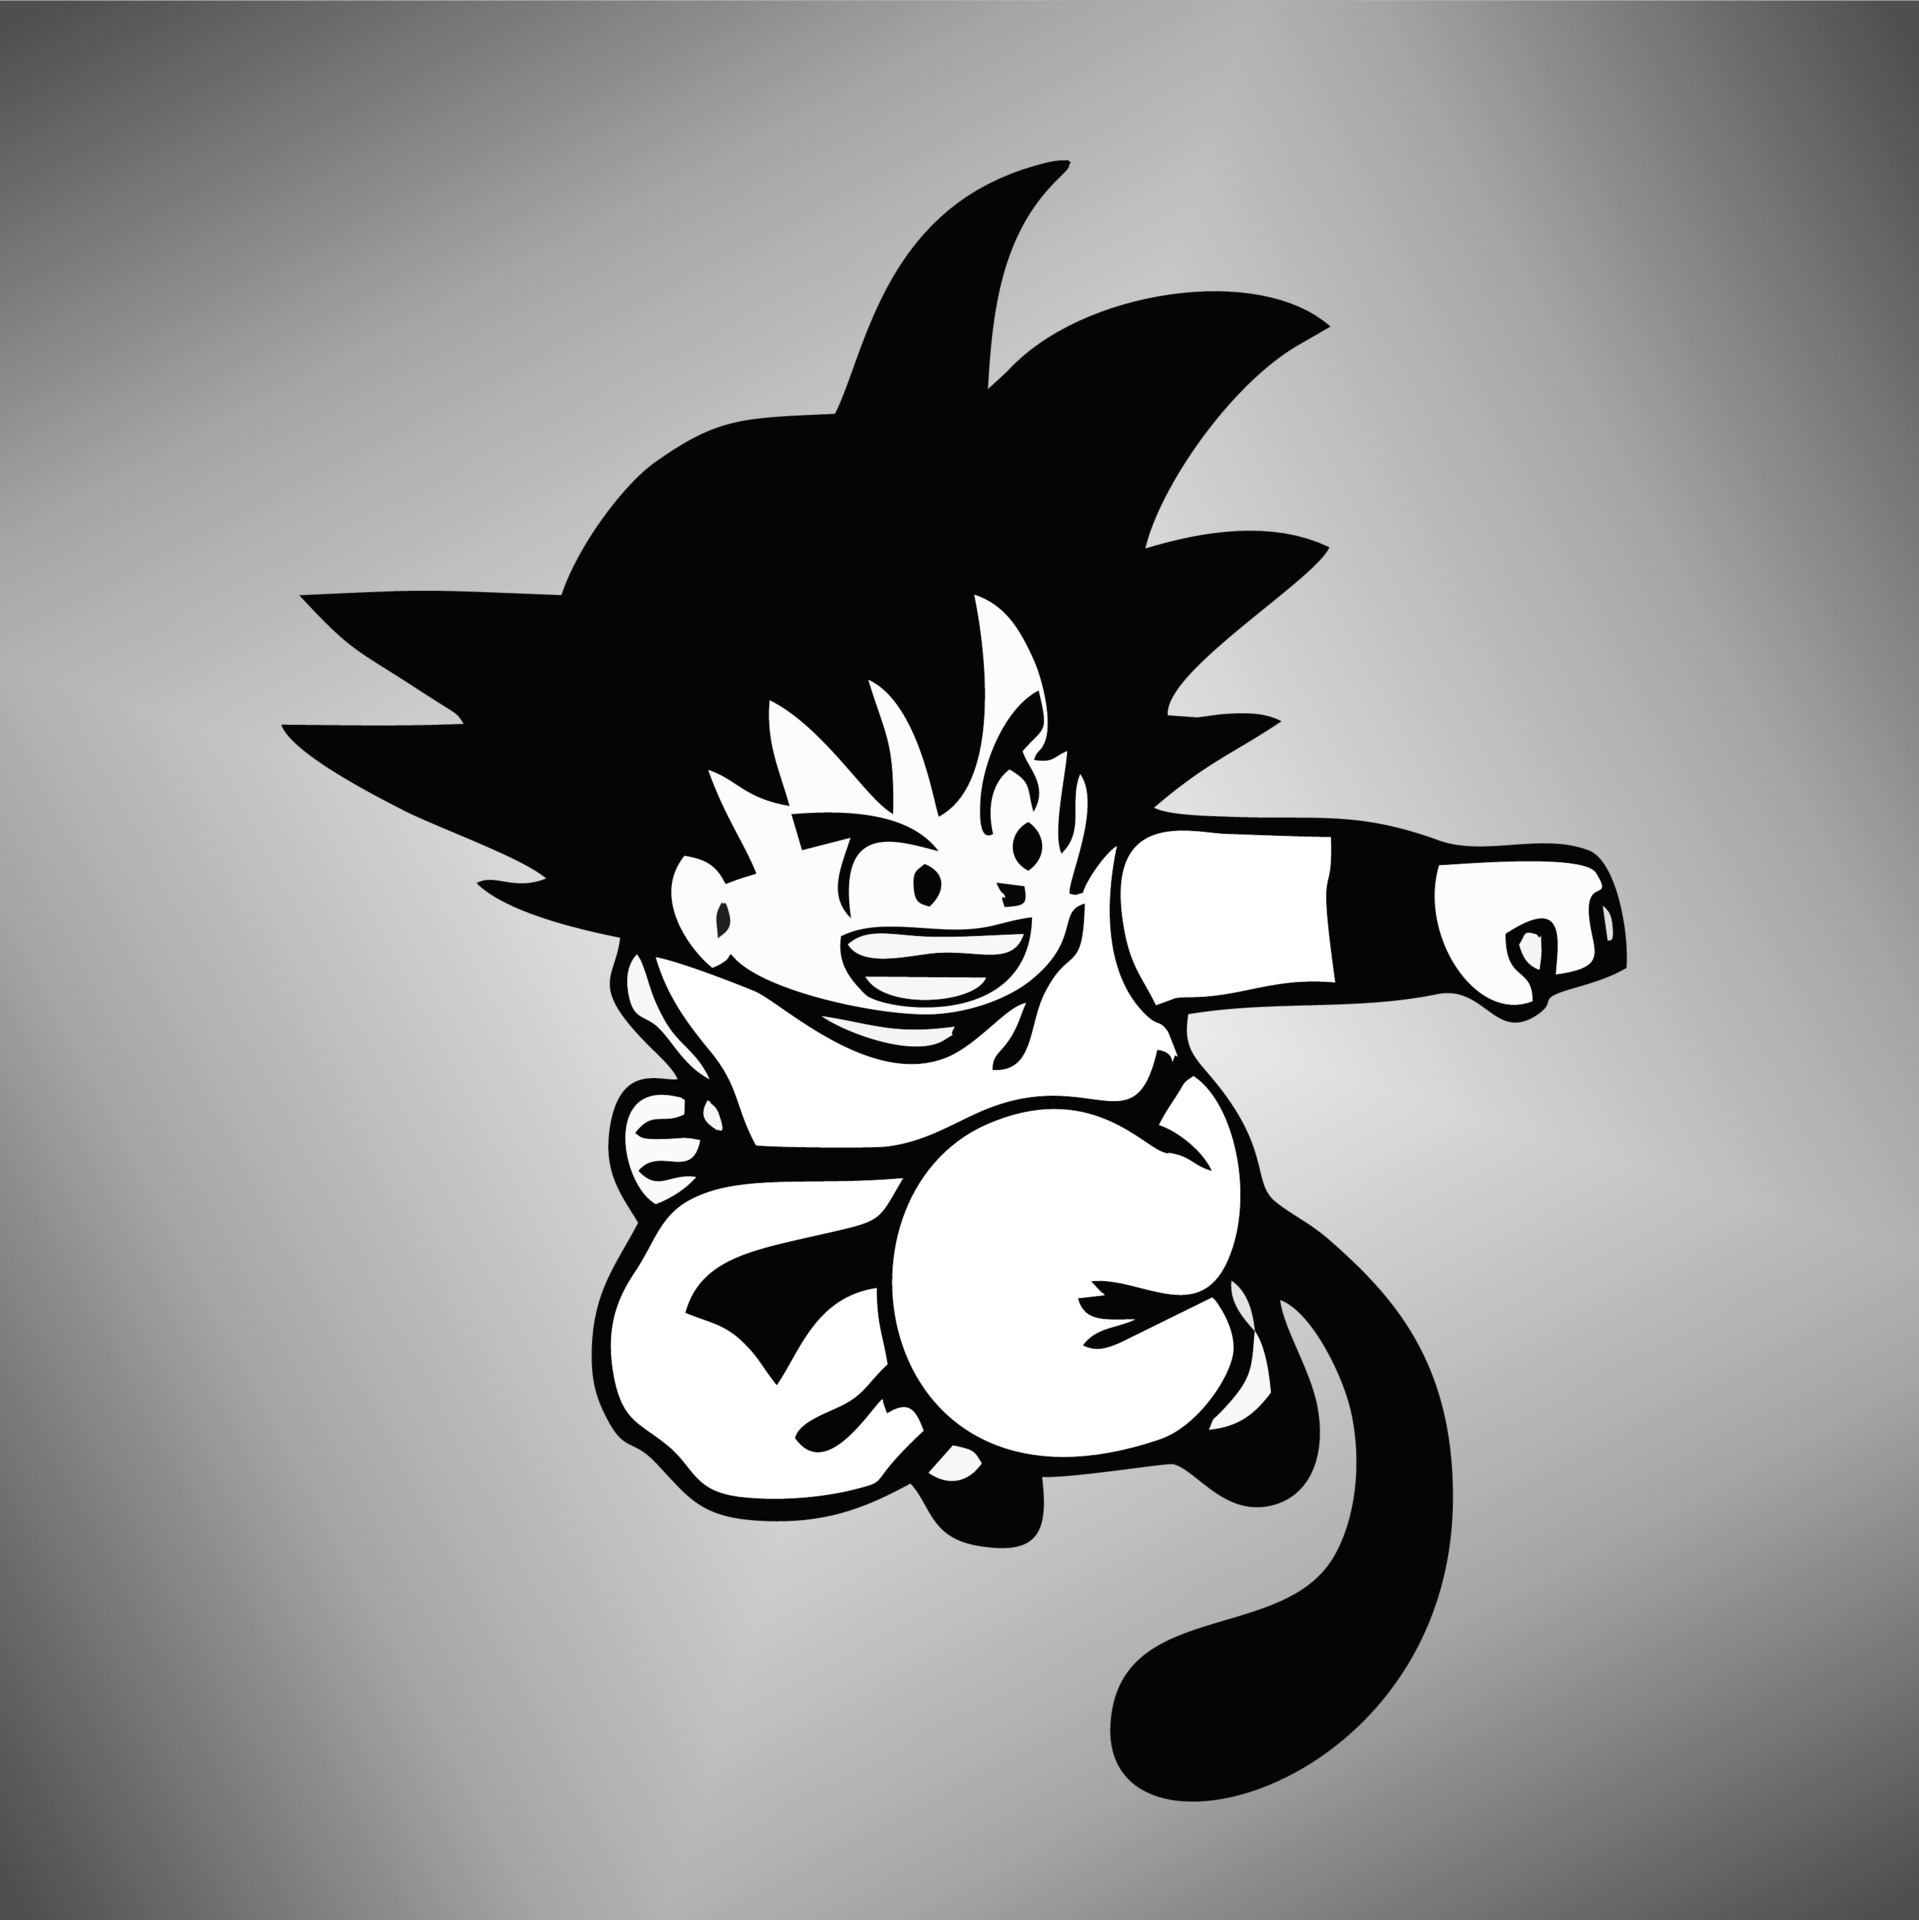 Apresentação Em Silhueta Da Bola De Dragão Goku Desenho Preto E Branco  Ilustração Stock - Ilustração de branco, preto: 174987585